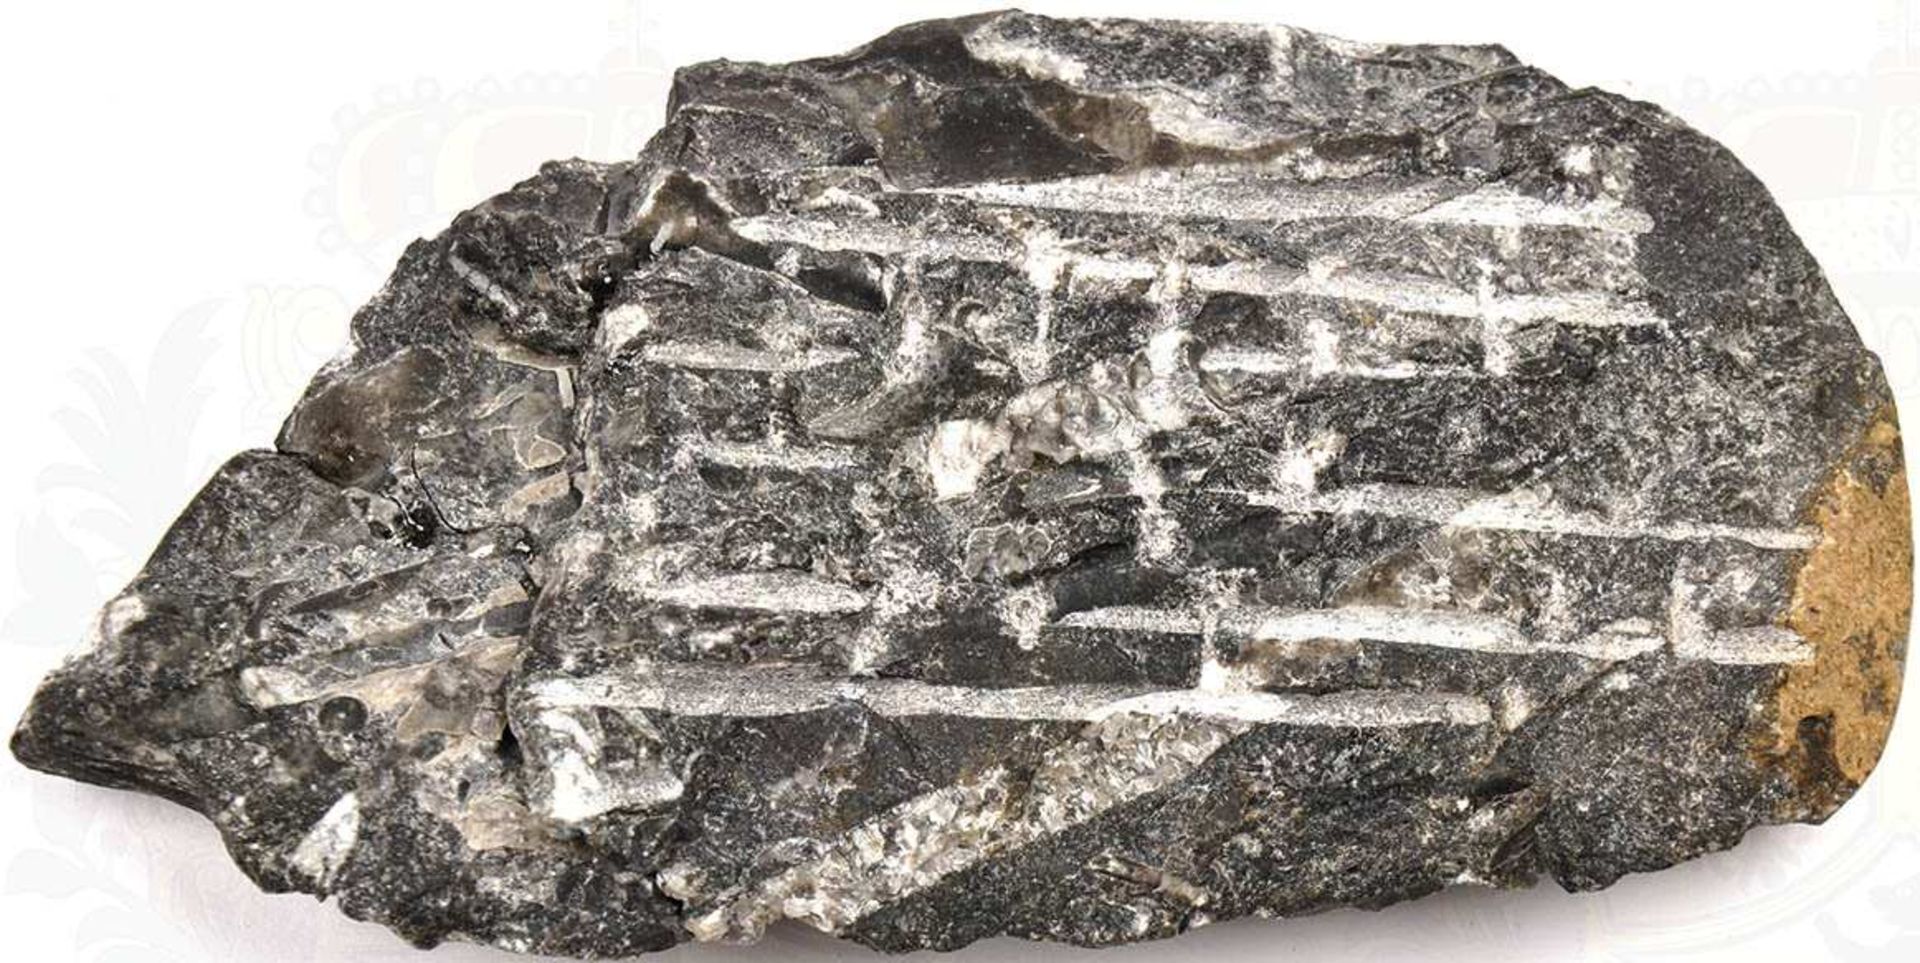 VERSTEINERUNG, "Fossil", verm. Donnerkeil, in kristallinem Gestein, zu Dekorationszwecken - Bild 2 aus 2